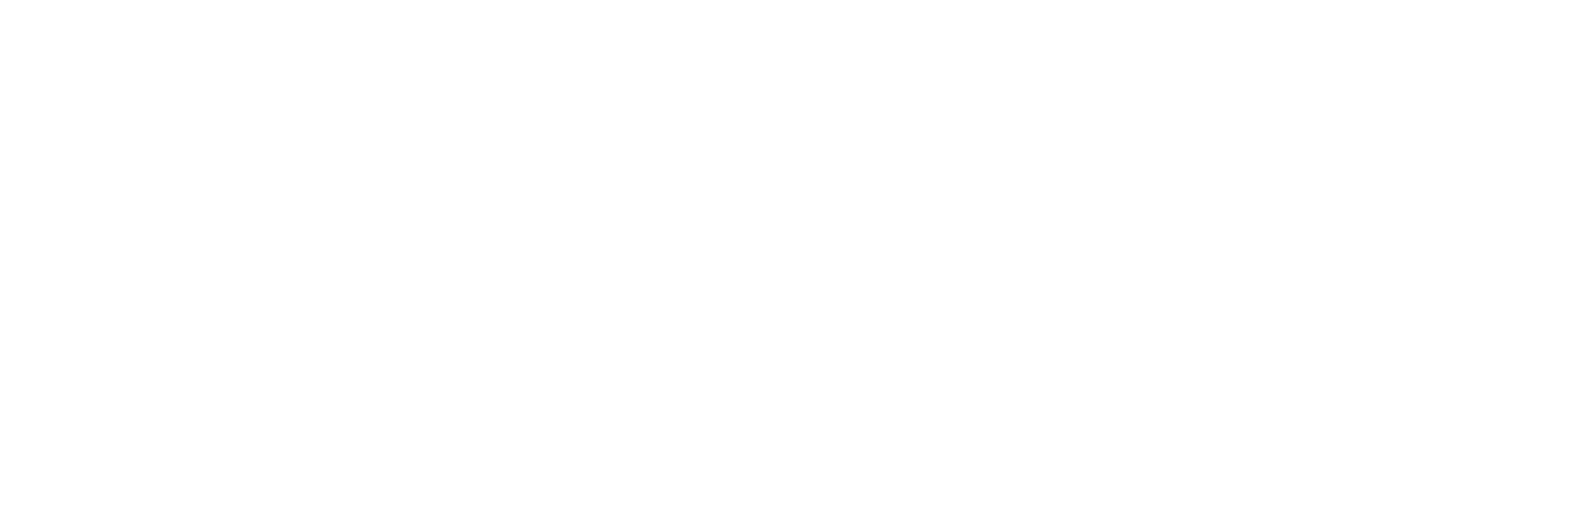 JPMorgan Chase logo pour fonds sombres (PNG transparent)